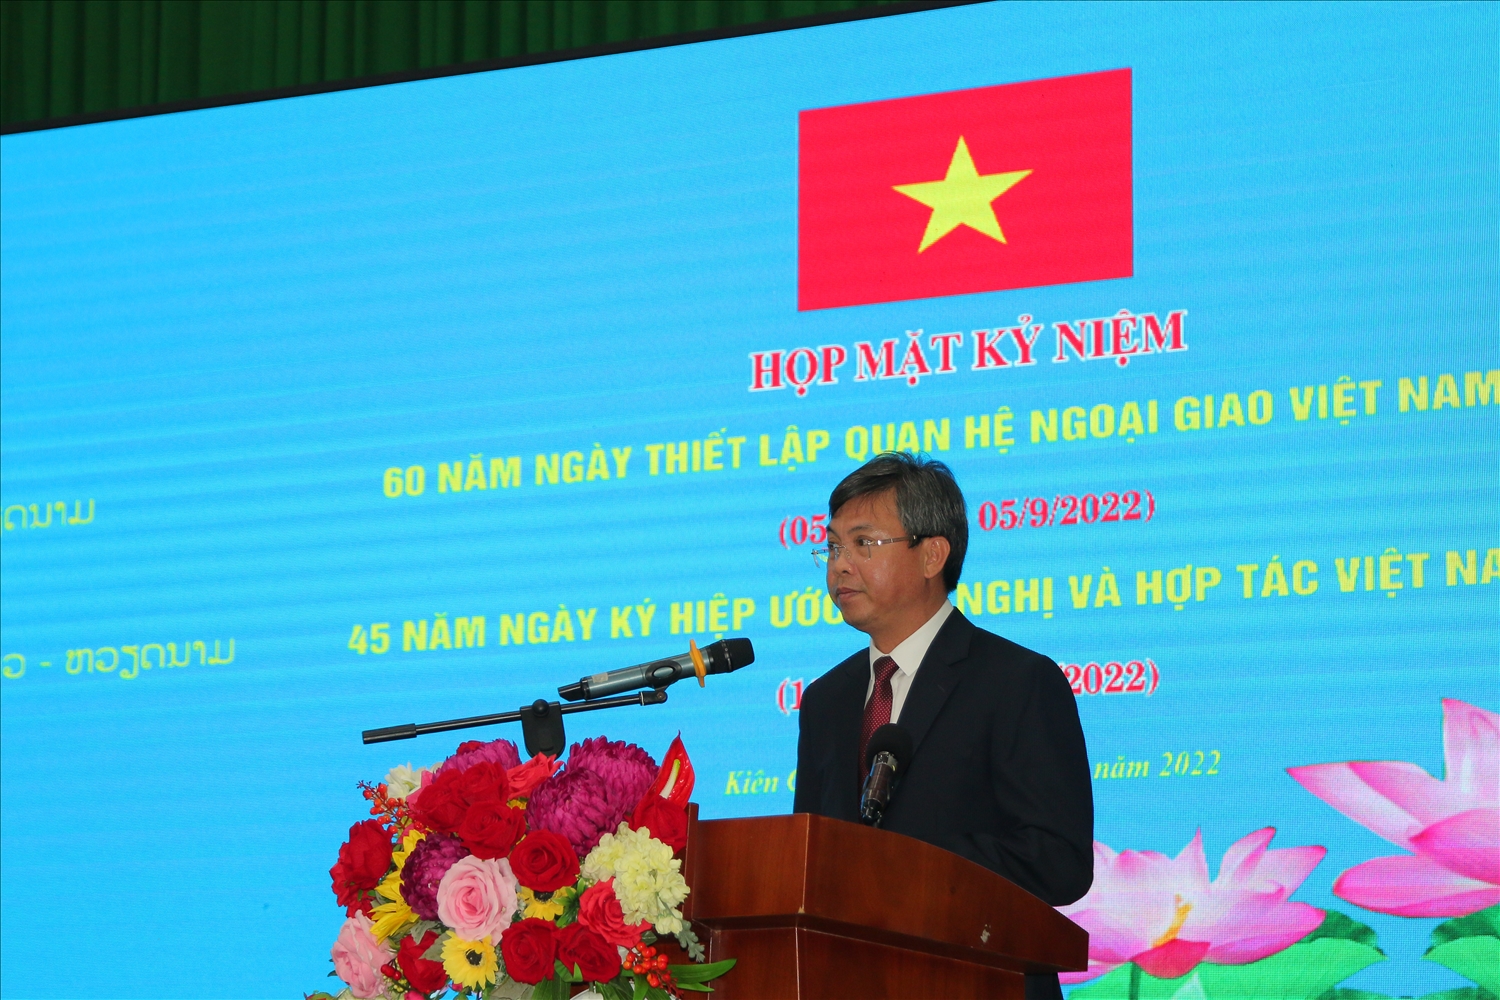 Ông Nguyễn Lưu Trung, Phó Chủ tịch UBND tỉnh Kiên Giang phát biểu chào mừng tại buổi họp mặt